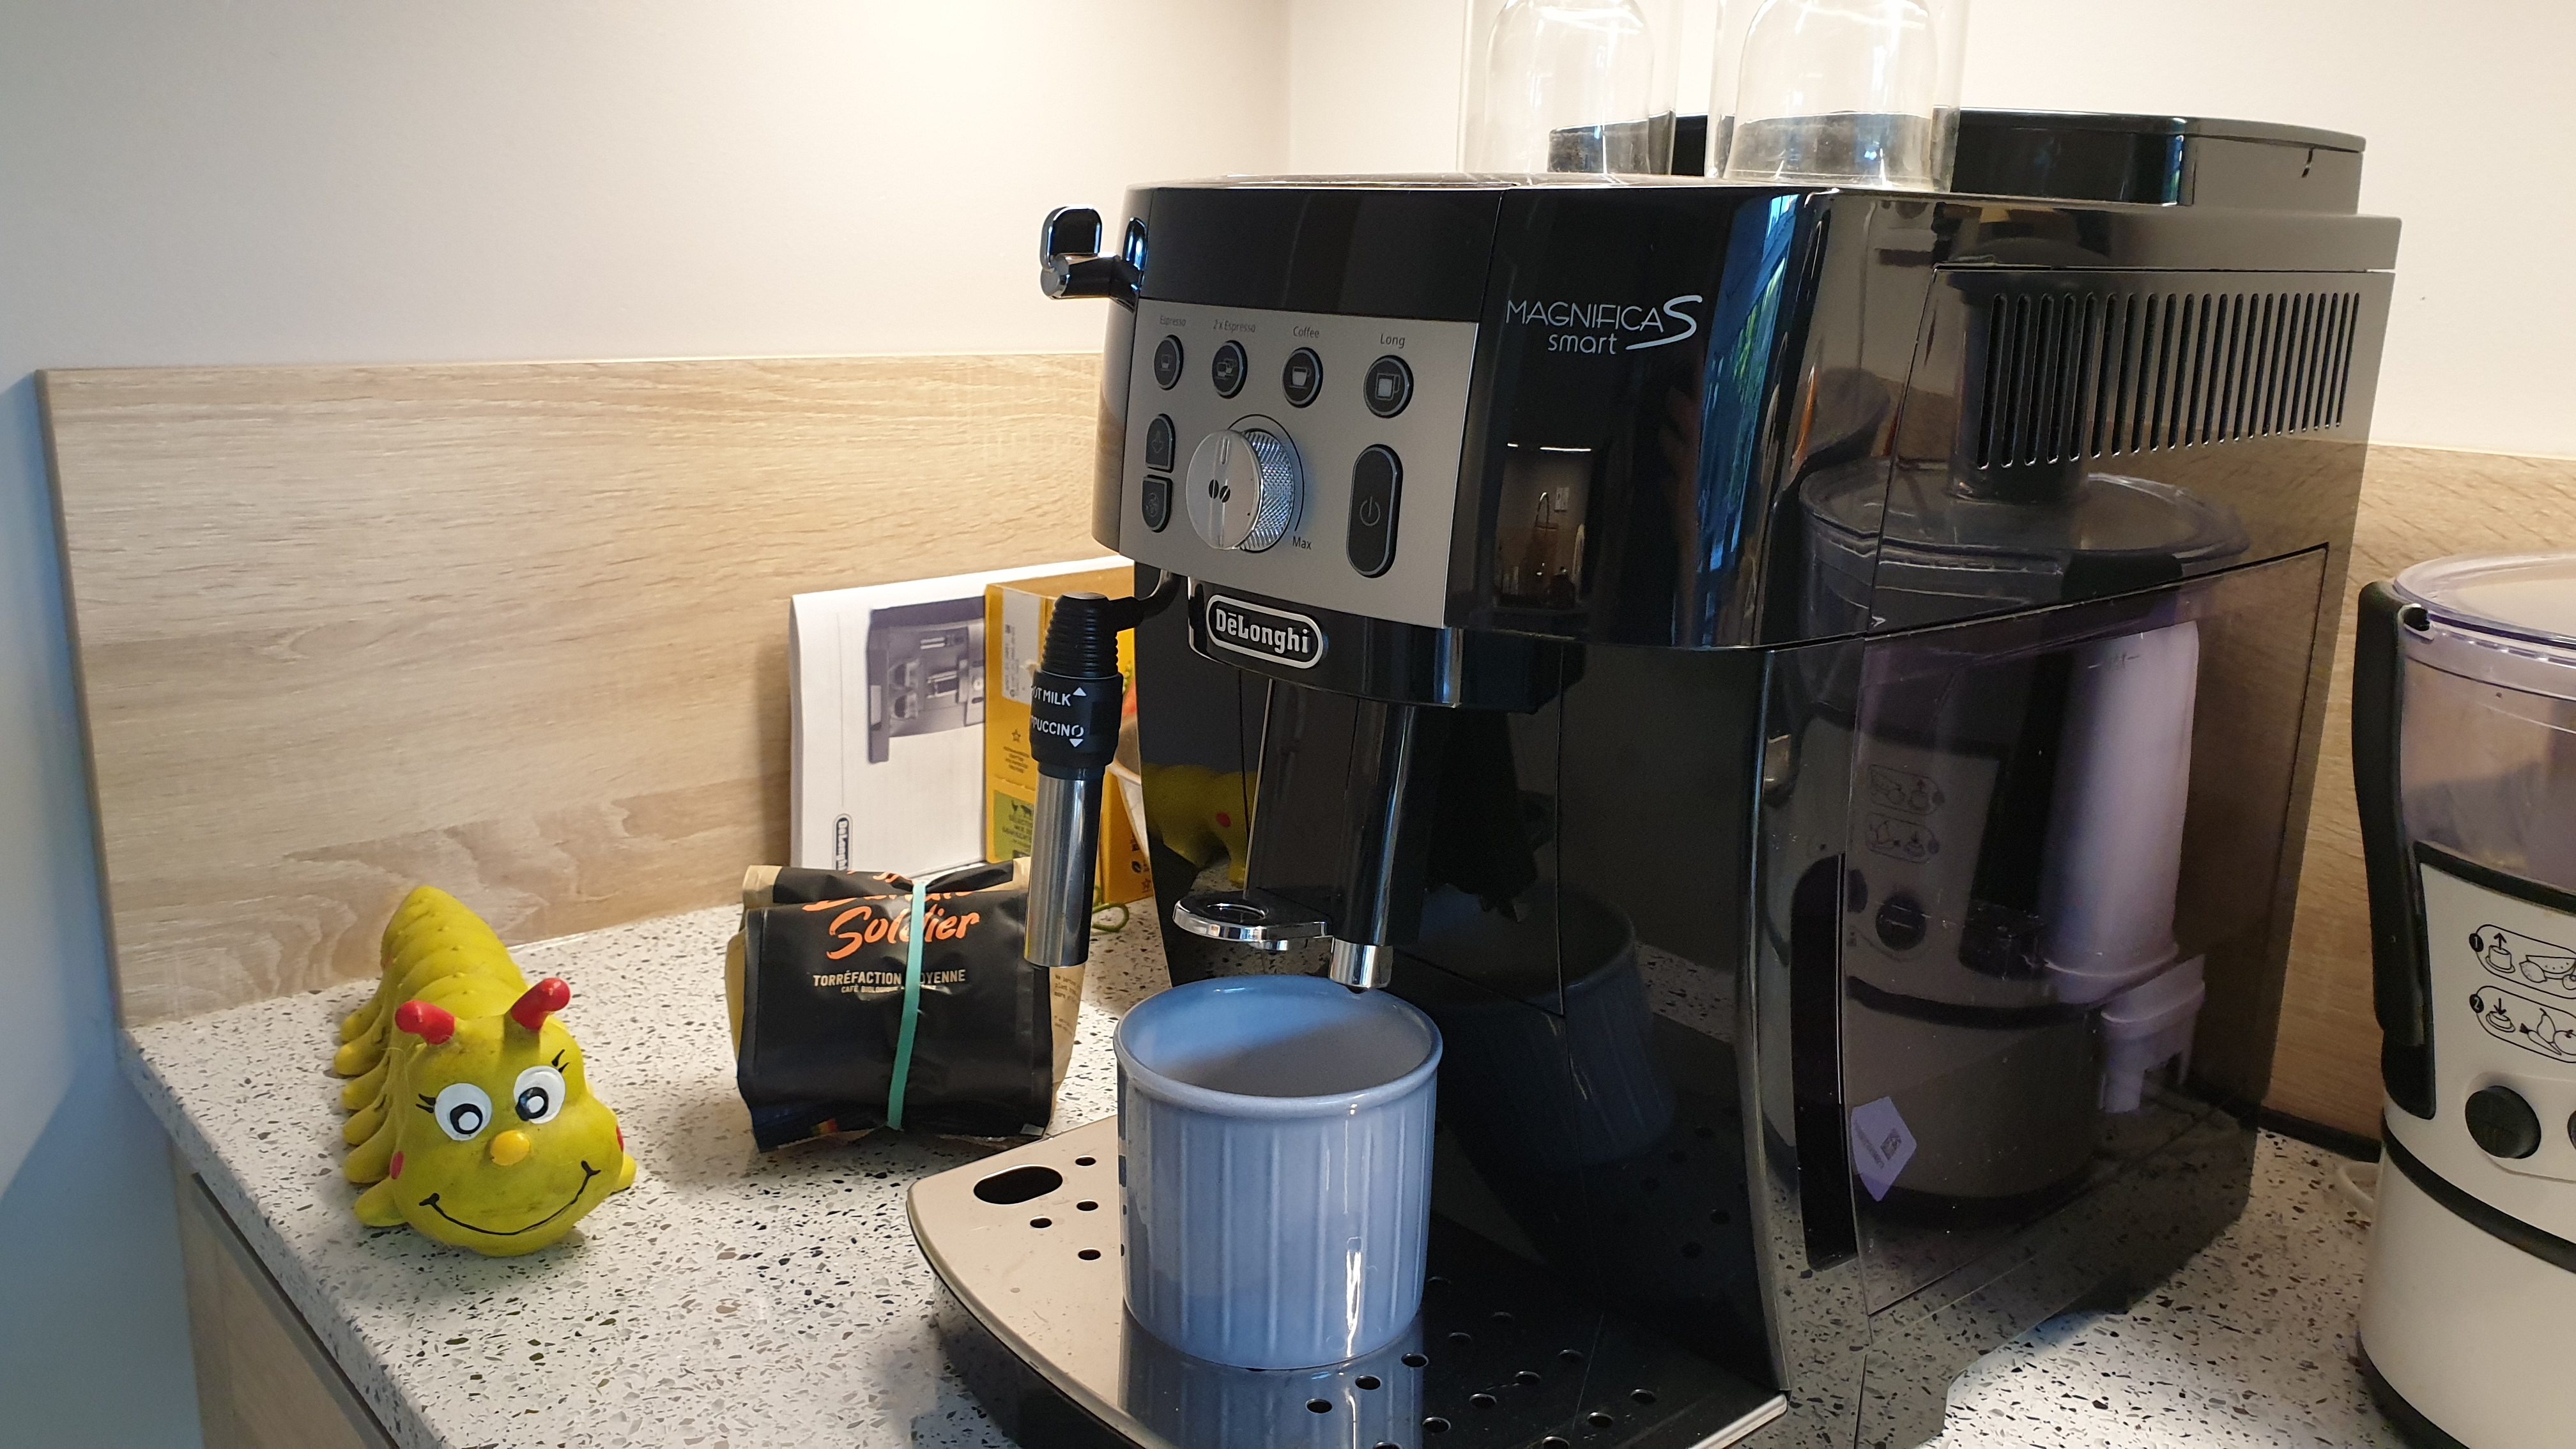 Comment régler votre machine à café DeLonghi Magnifica S ?